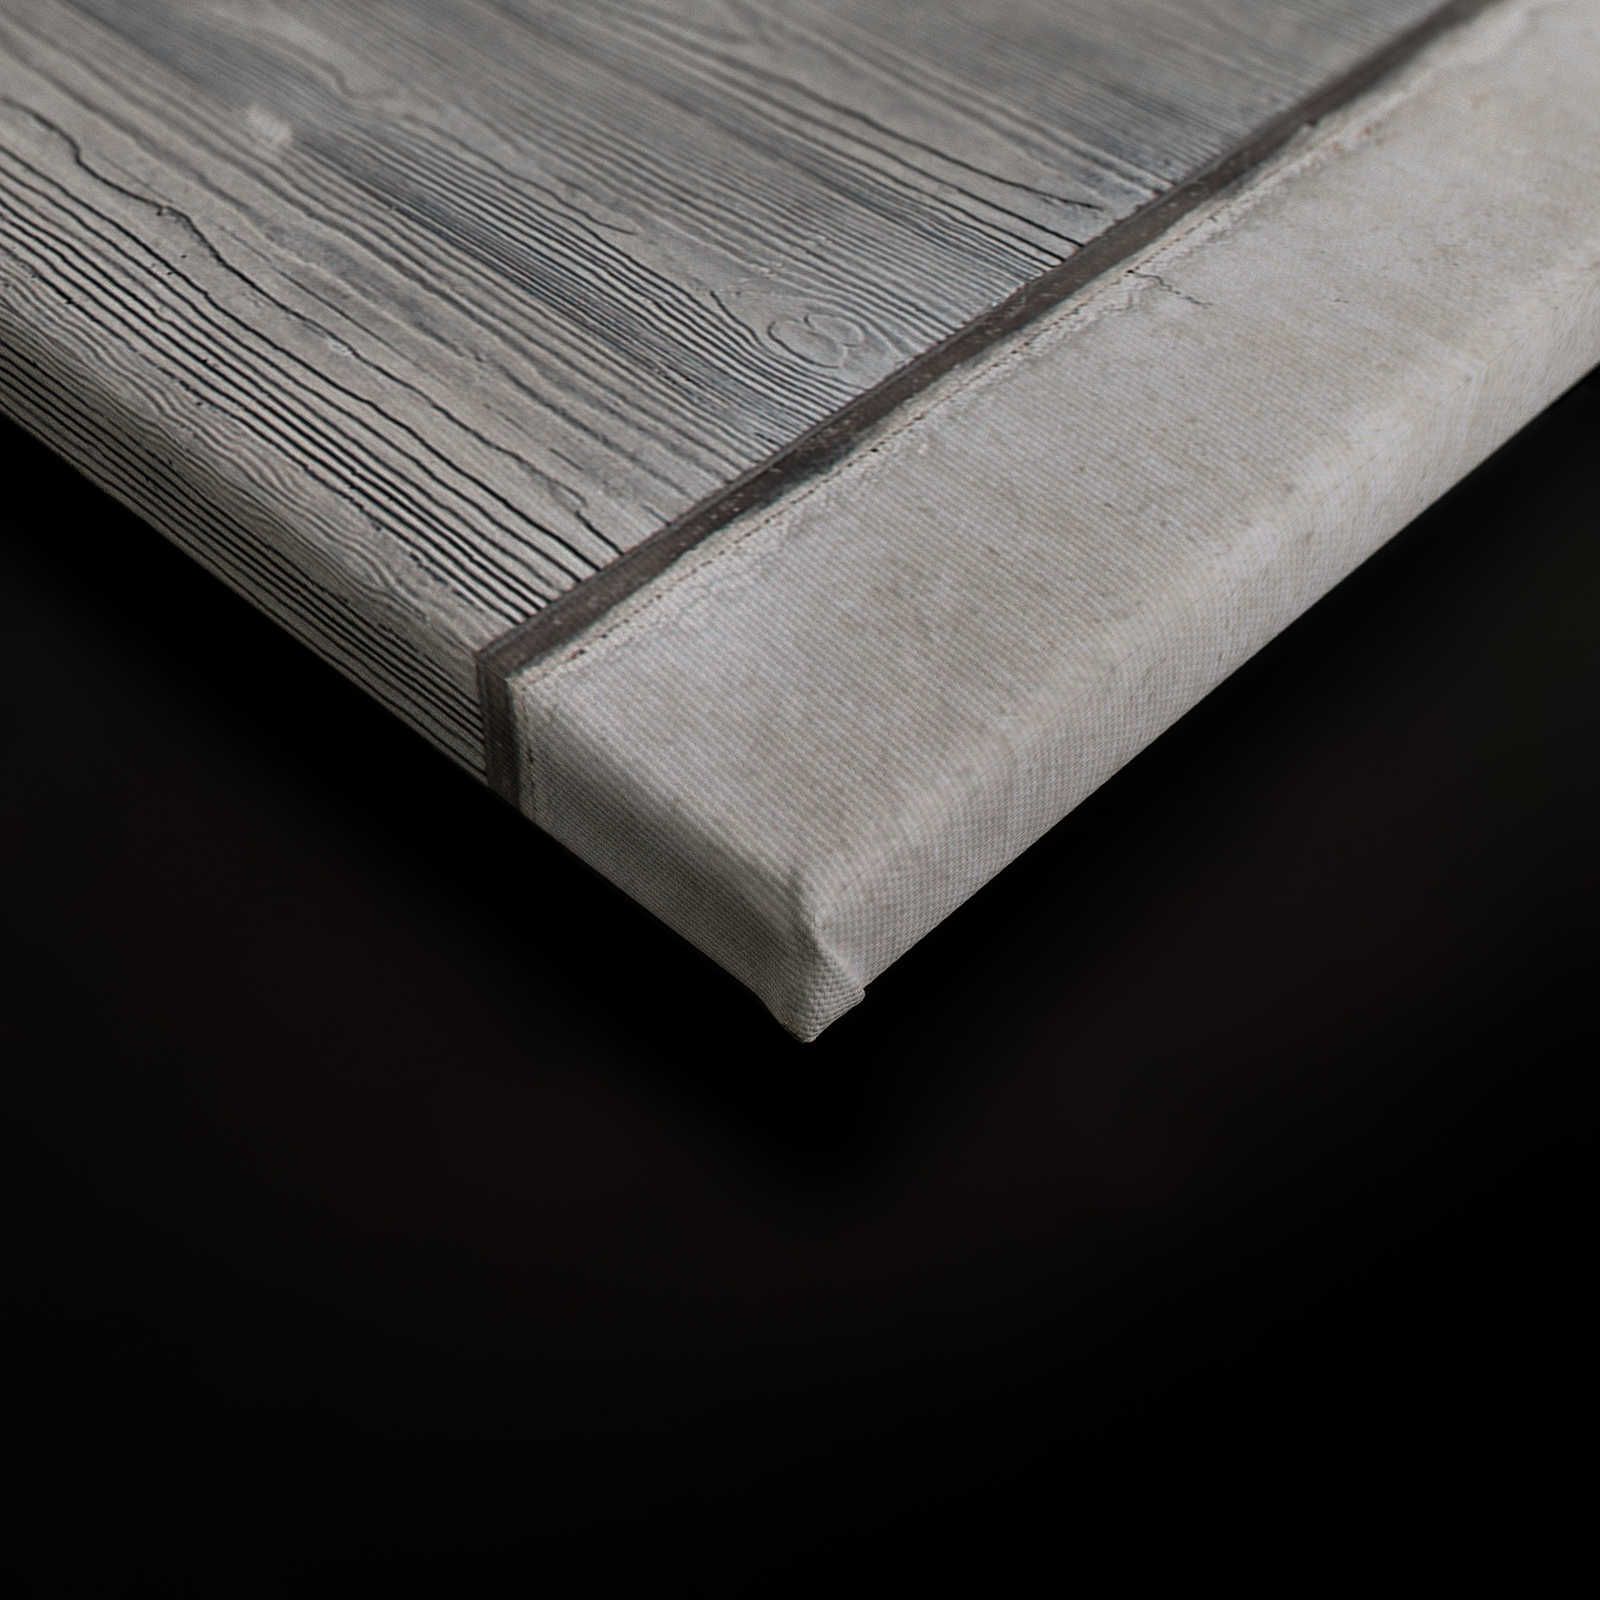             Quadro in lastre di cemento con cassaforma in tavole e venature del legno - 0,90 m x 0,60 m
        